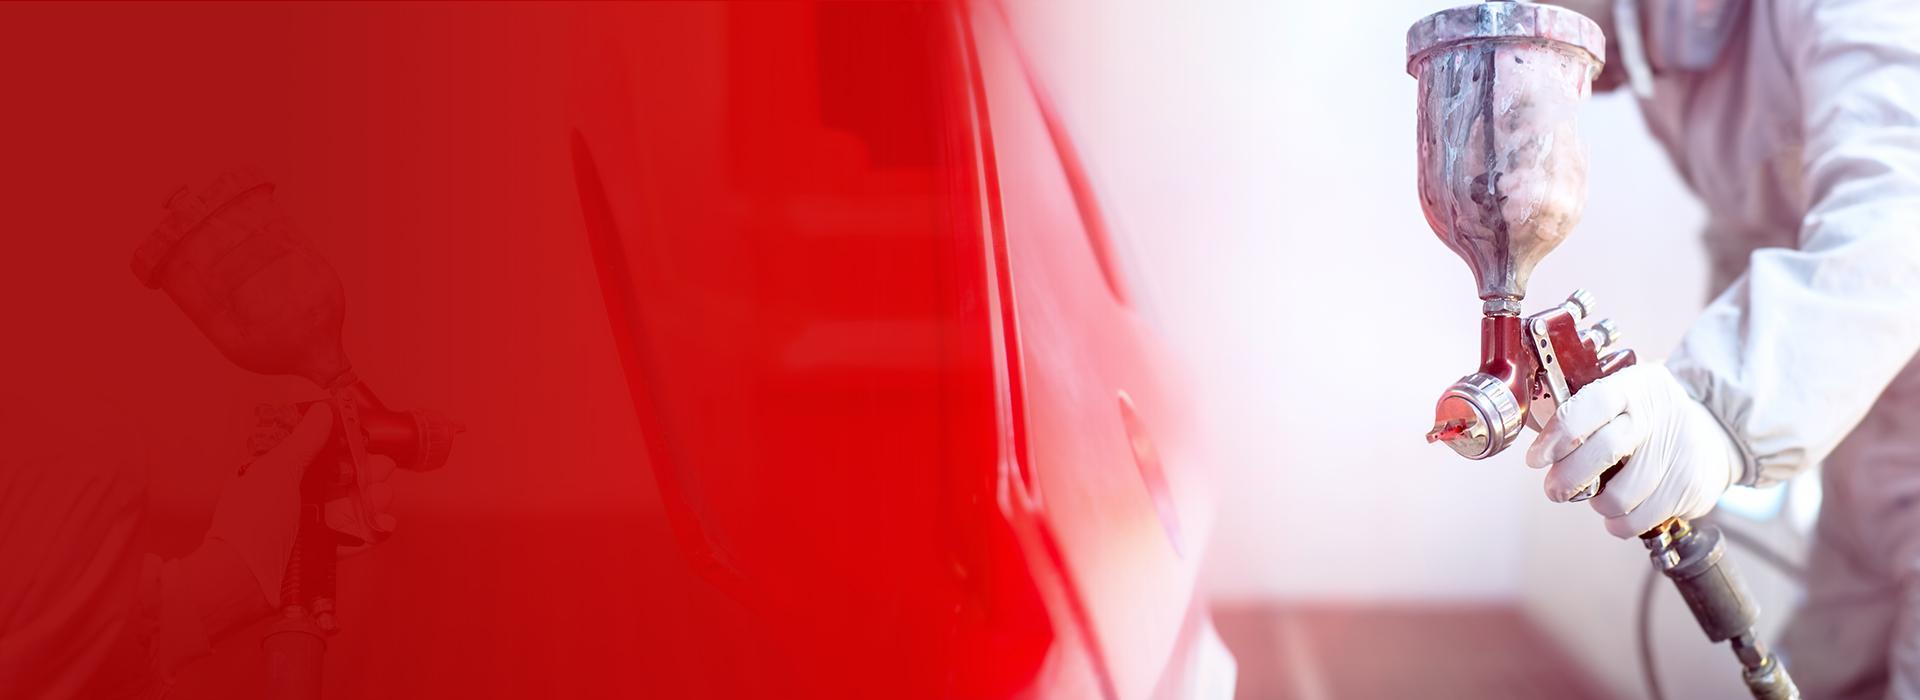 Slajd 2 -  lakierowanie auta czerwona farba